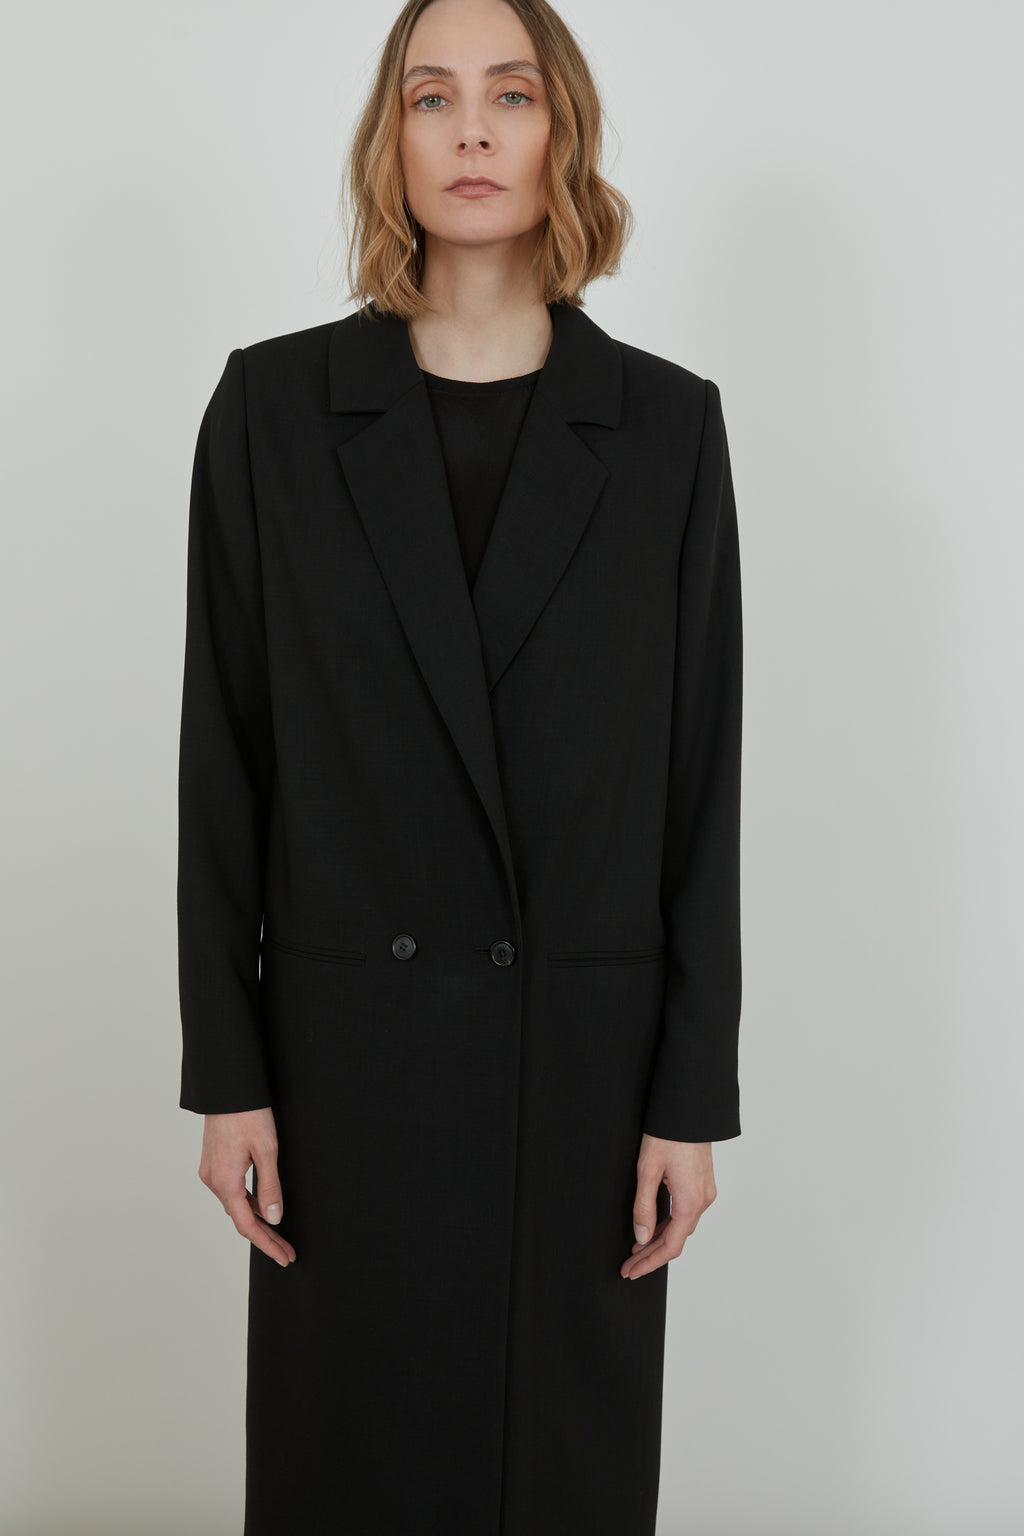 Adeline coat - black - virgin wool